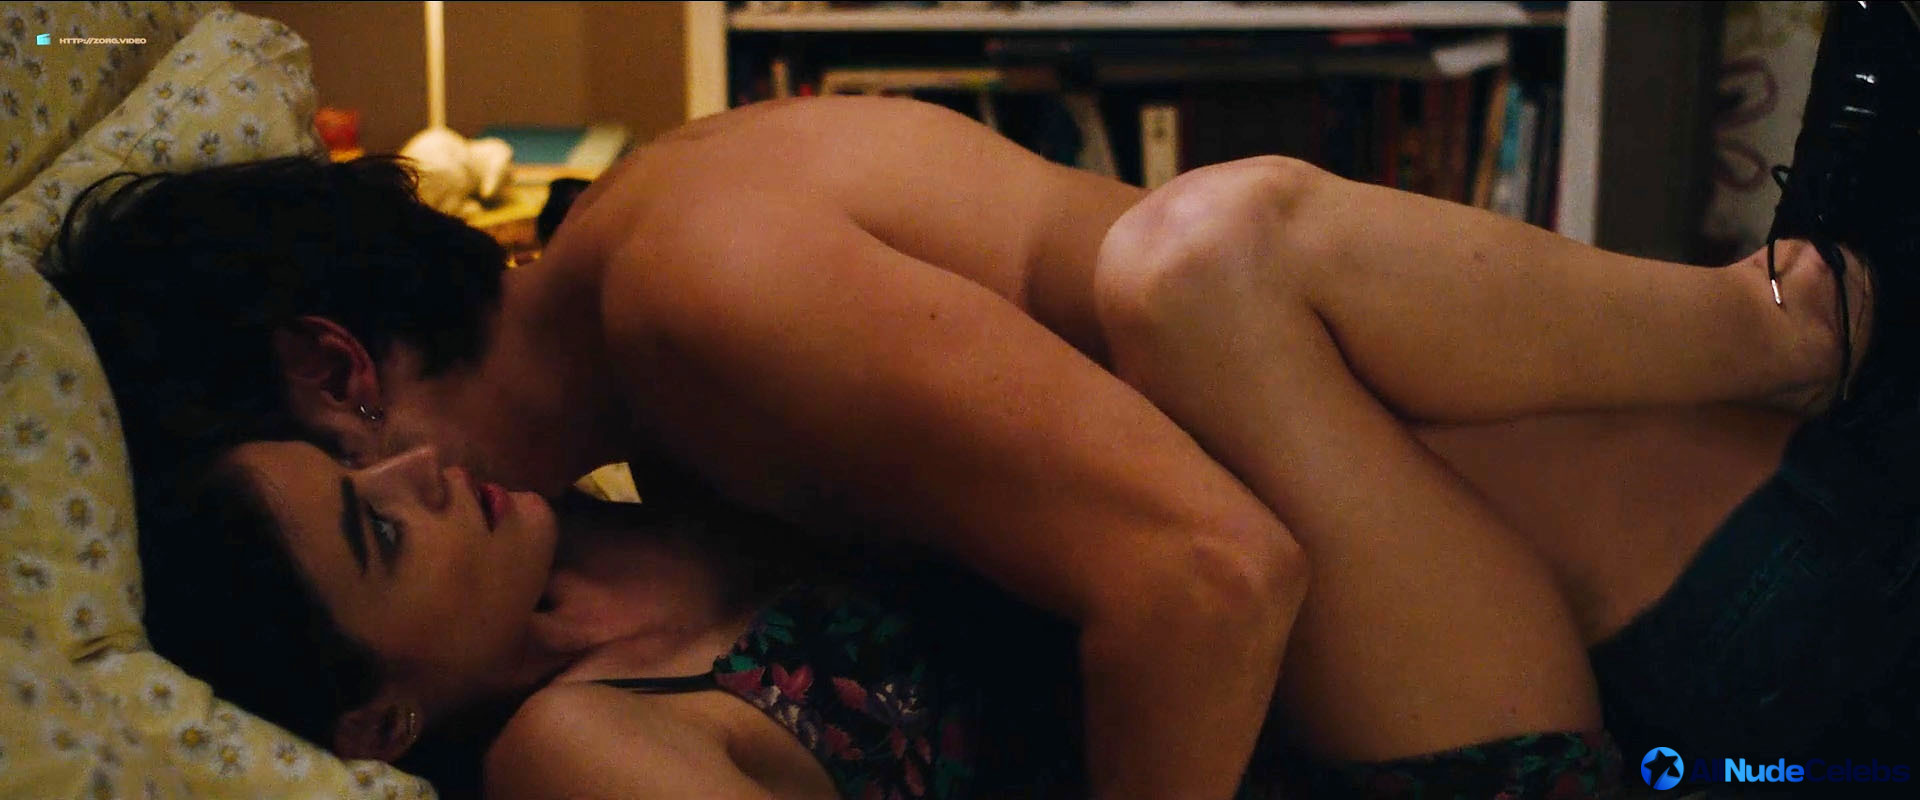 Lucy Hale nude sex scenes.